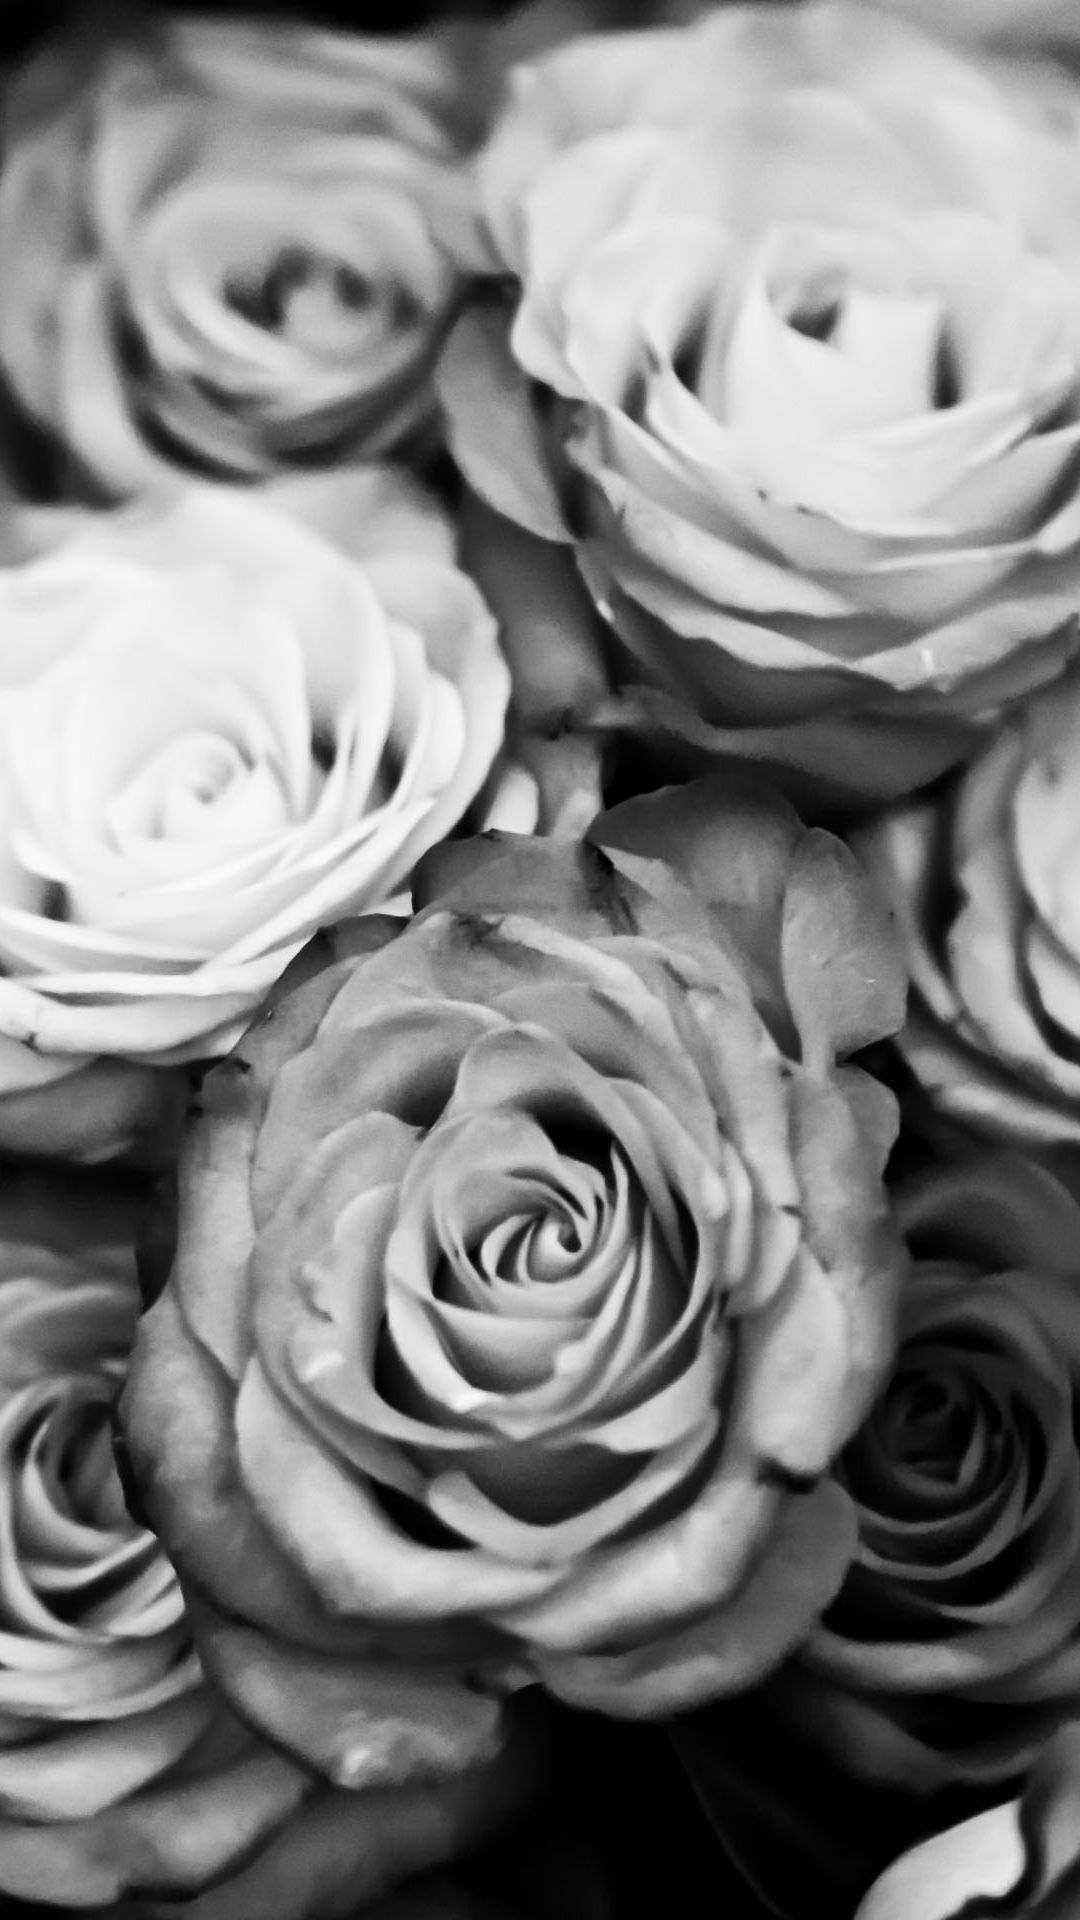 بهترین تصویر زمینه سیاه سفید موبایل با نقش گل رز 1402